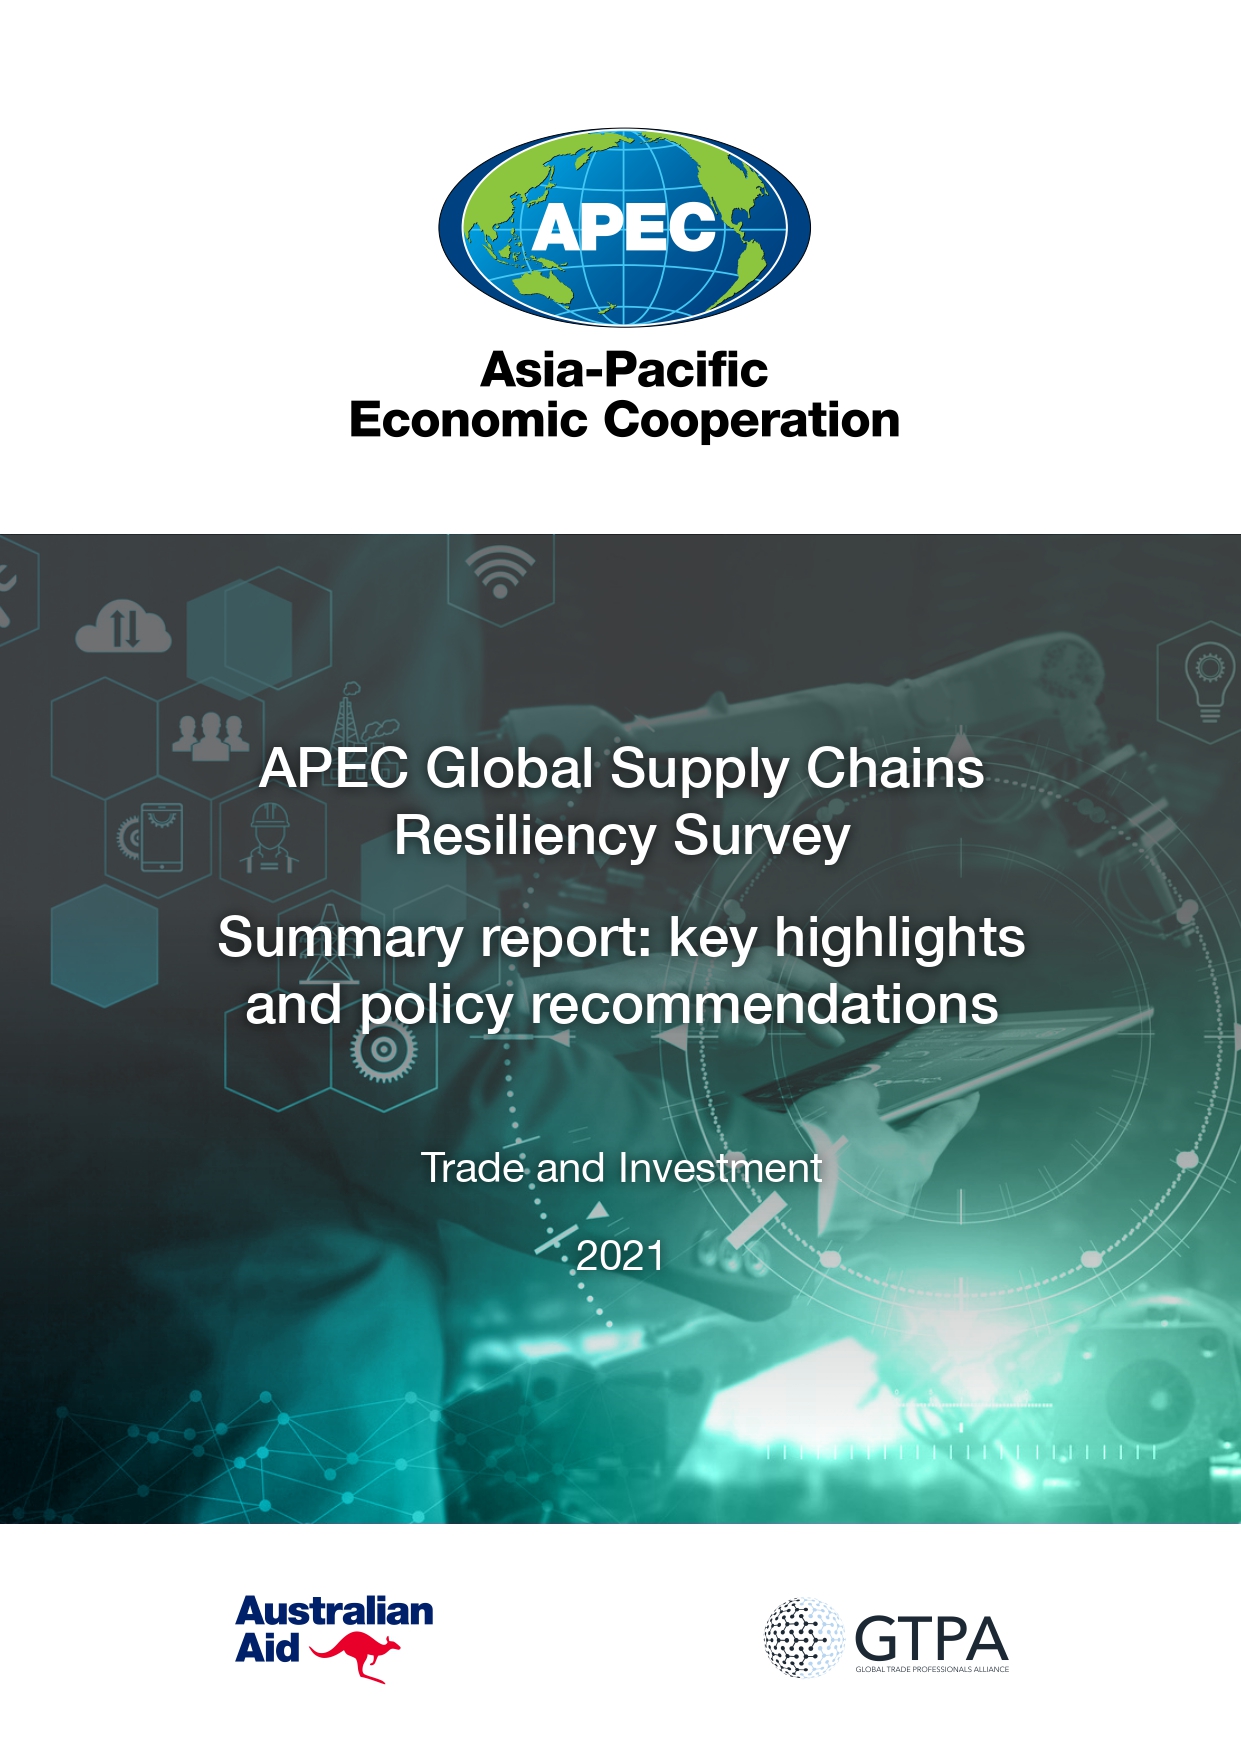 APEC business resilience survey